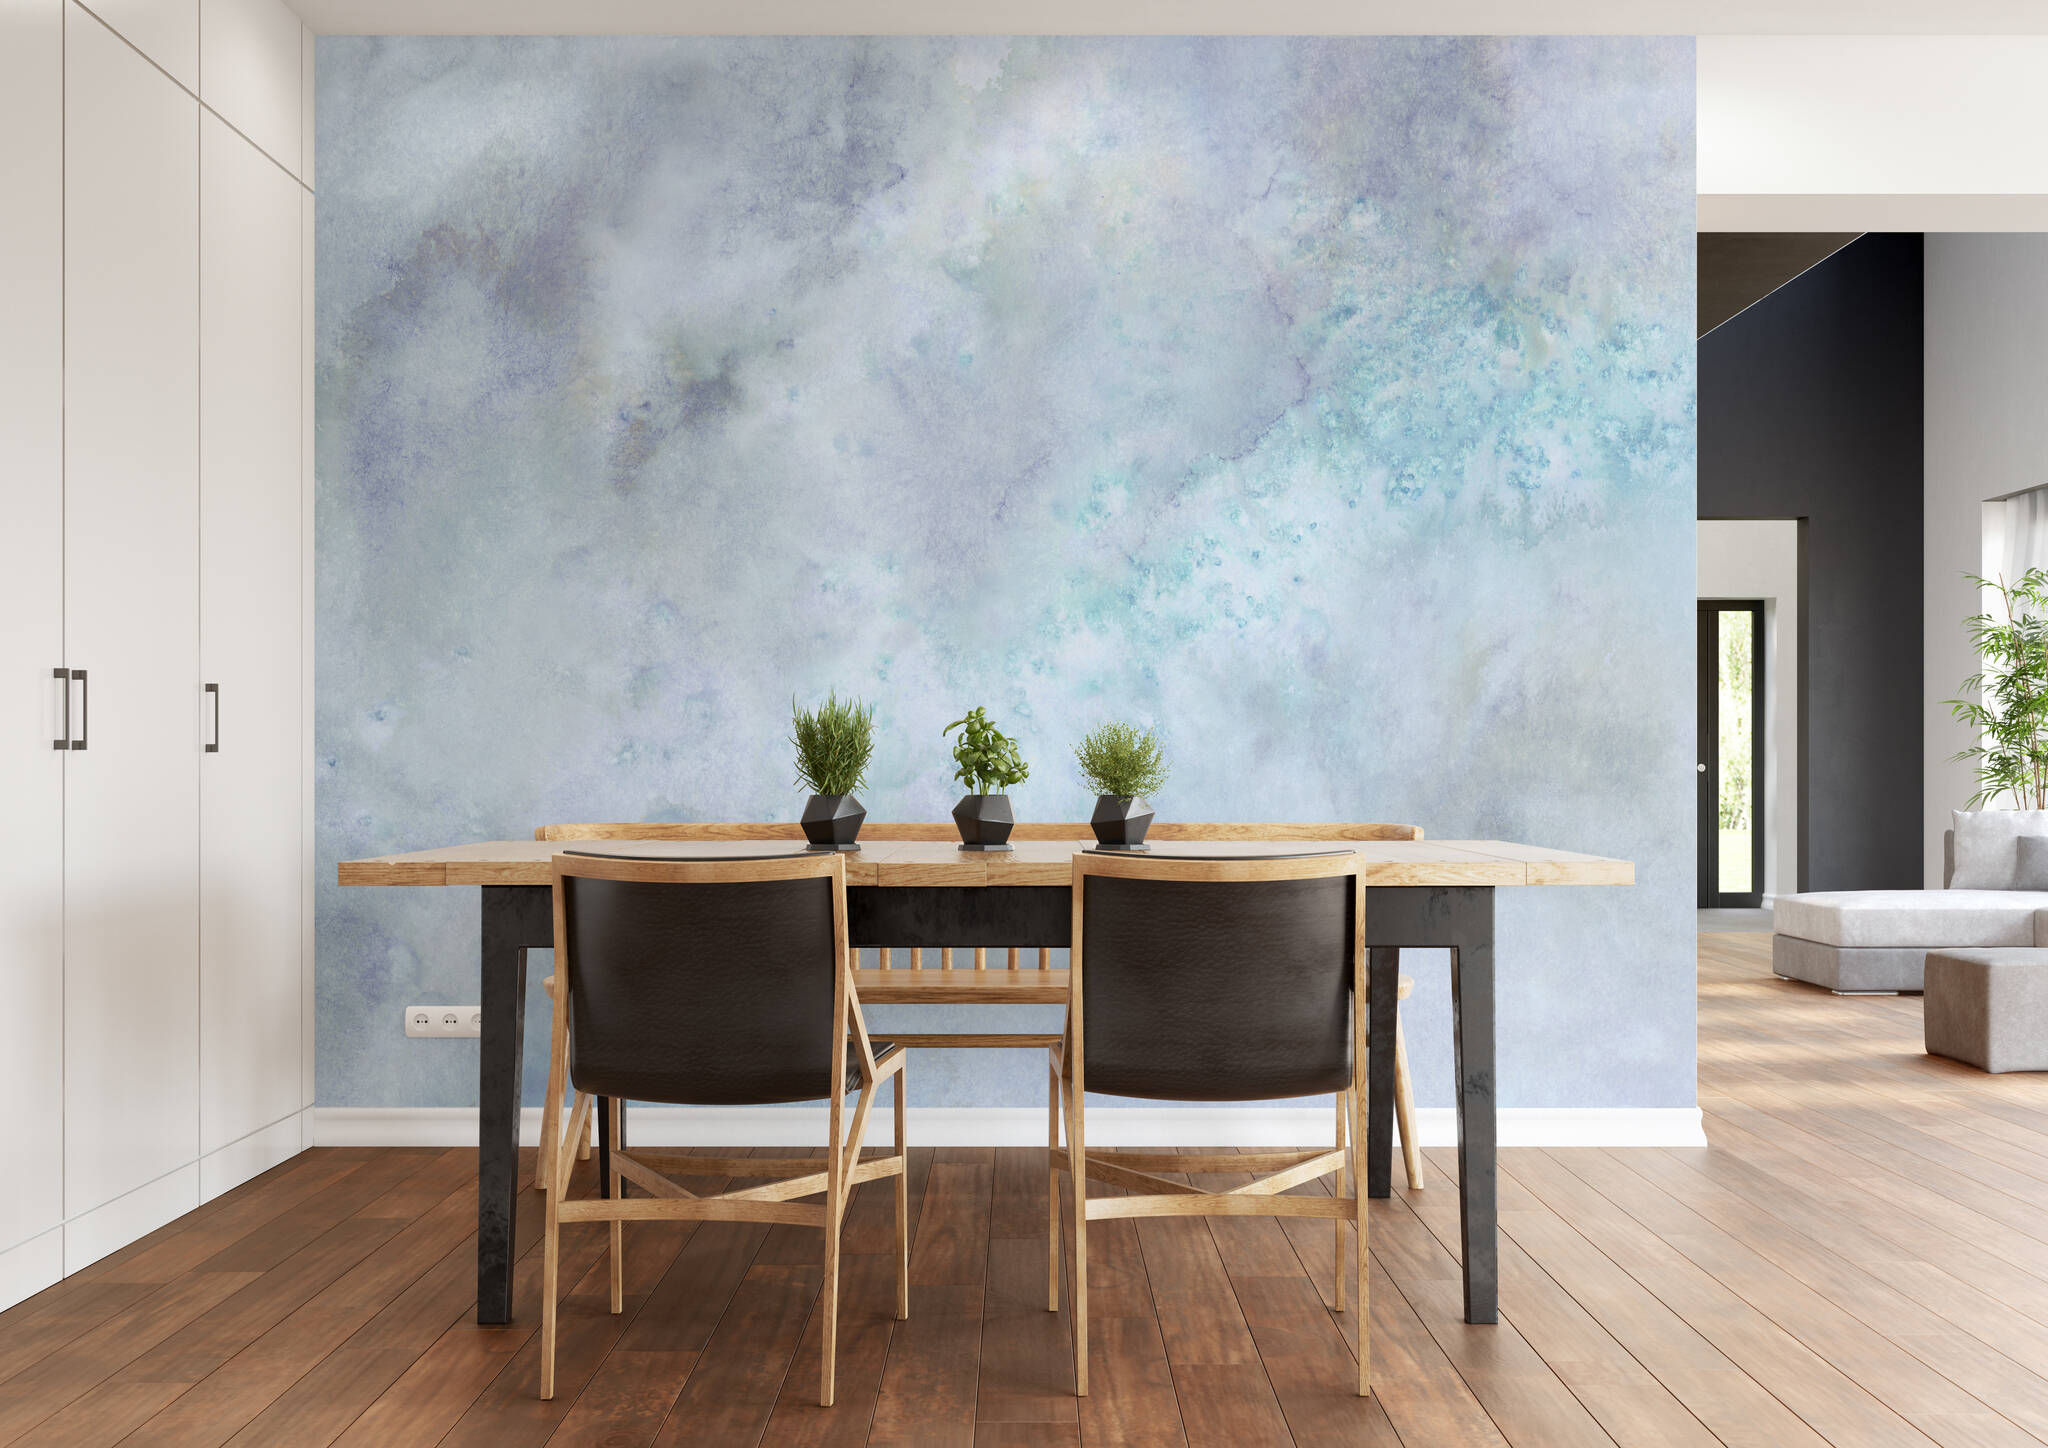 Esszimmer mit Wandbild - Wolkiges Aquarell in weiß, blau und grau mit spannenden Farbverläufen 